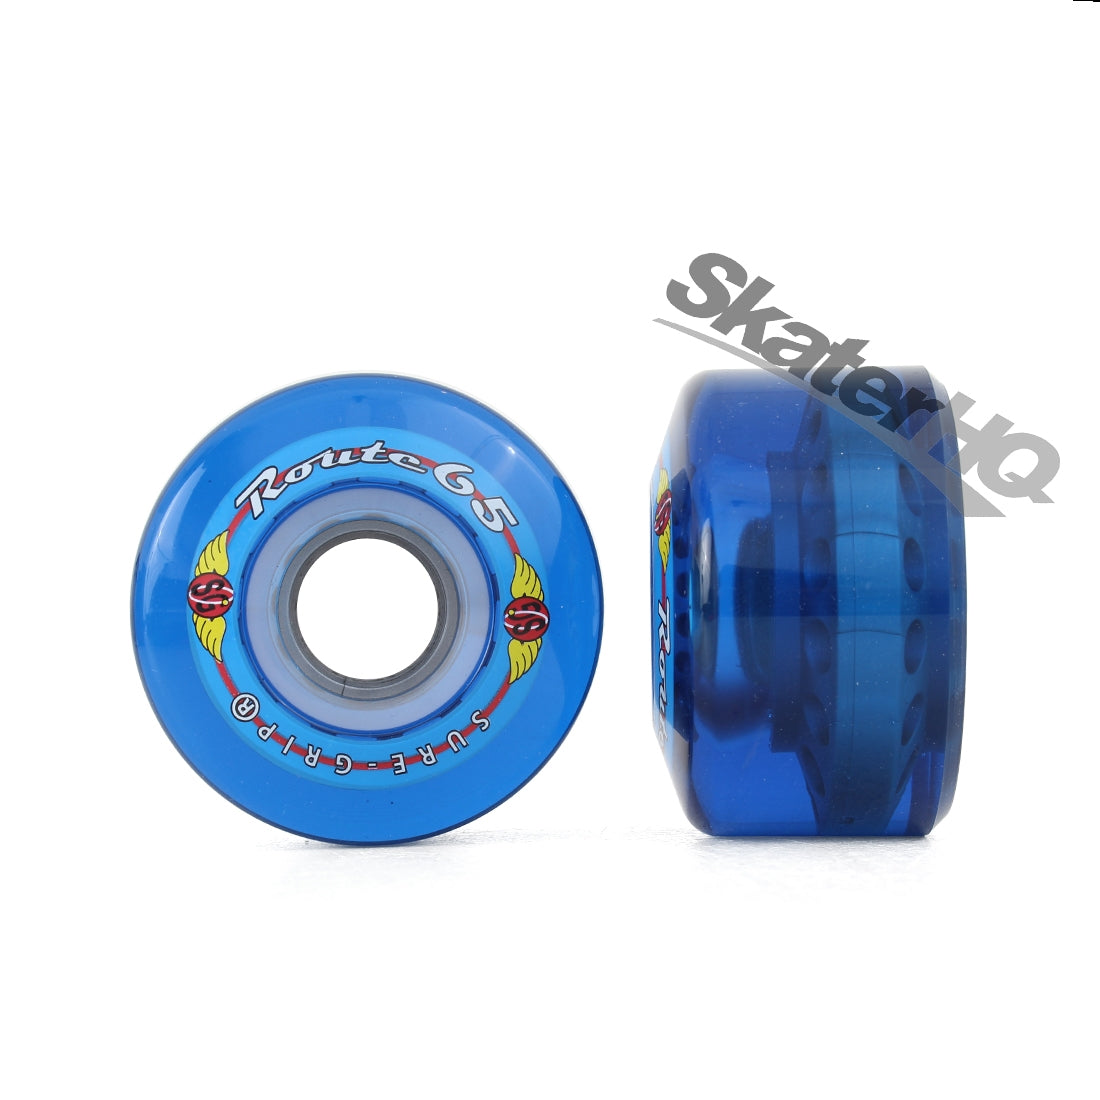 Kryptonics Route 65mm/78a 8pk - Blue Roller Skate Wheels